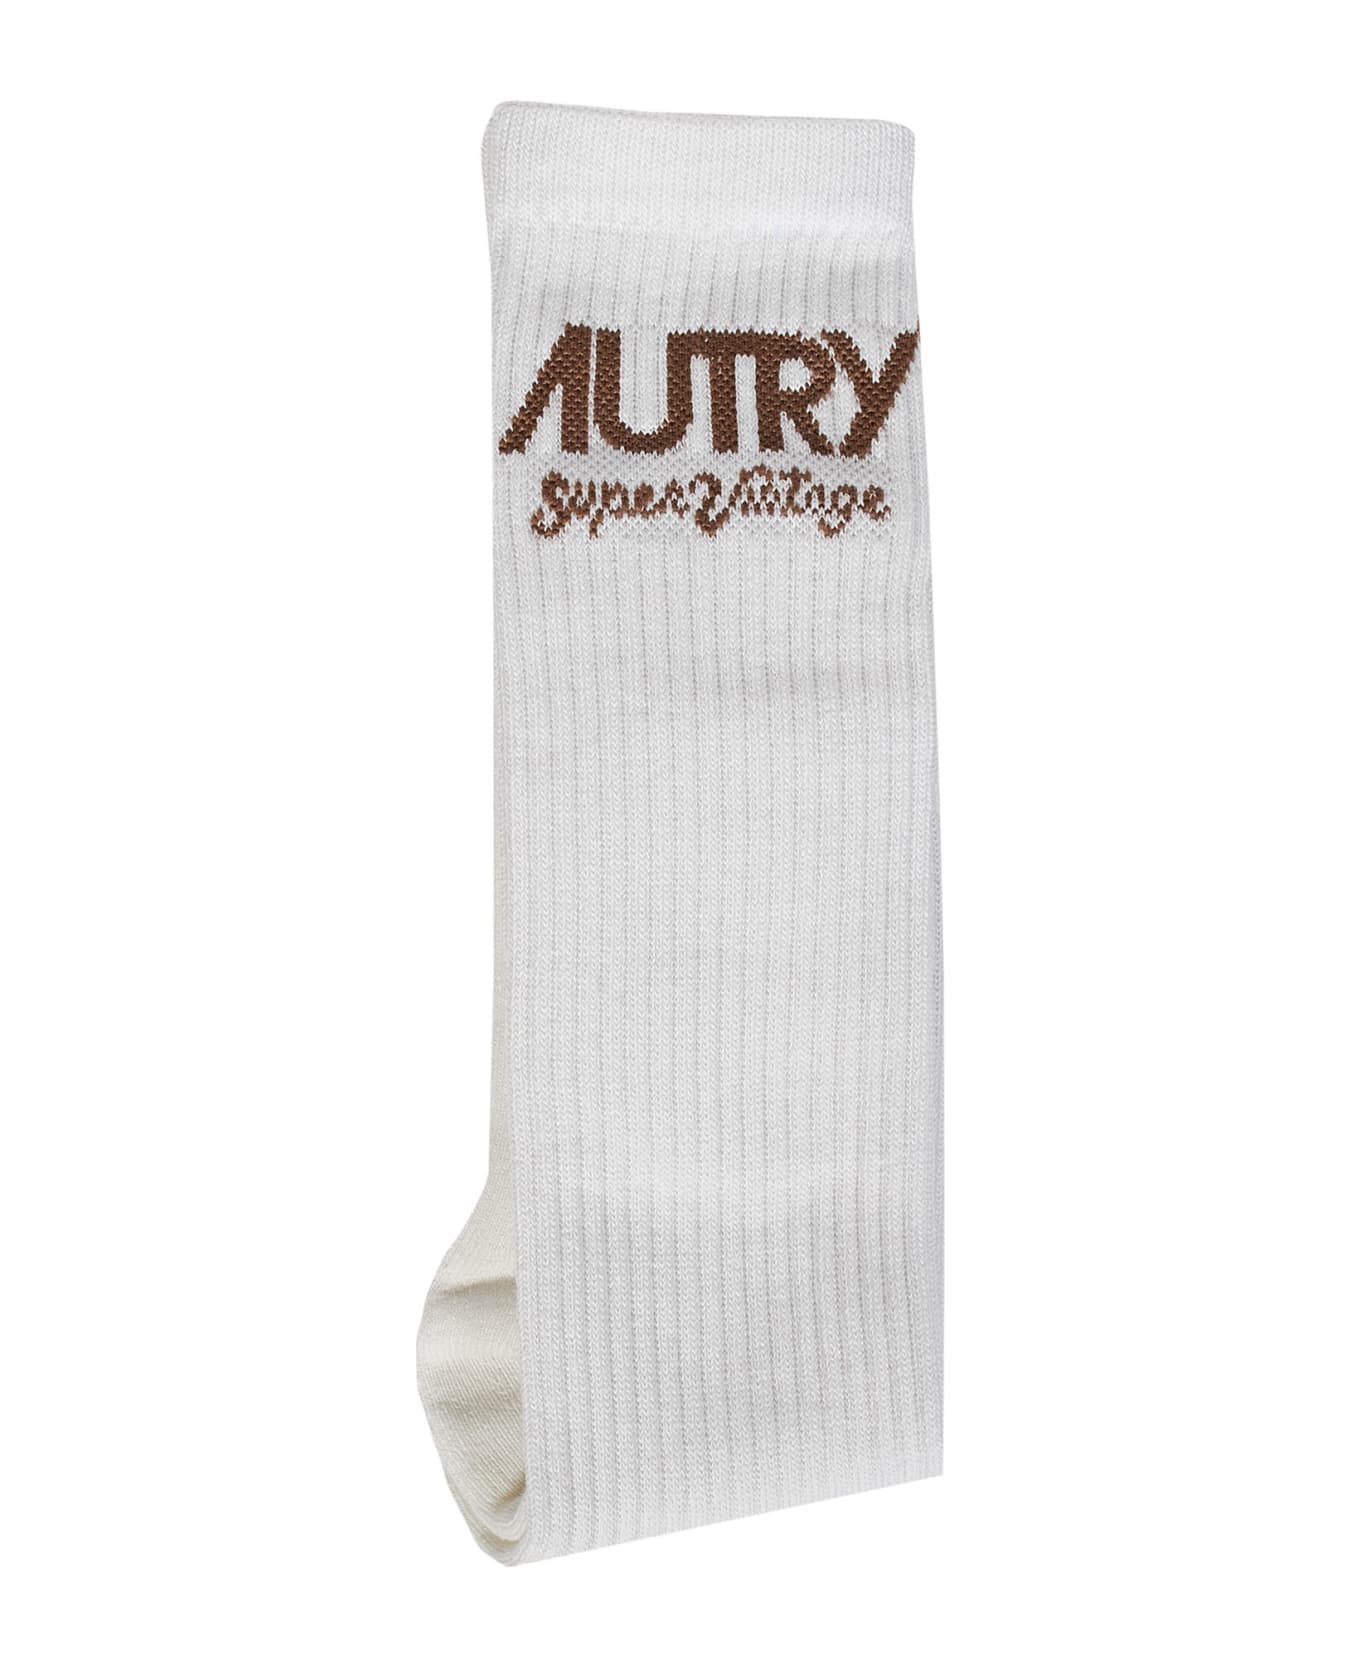 Autry Supervintage Socks - Grigio 靴下